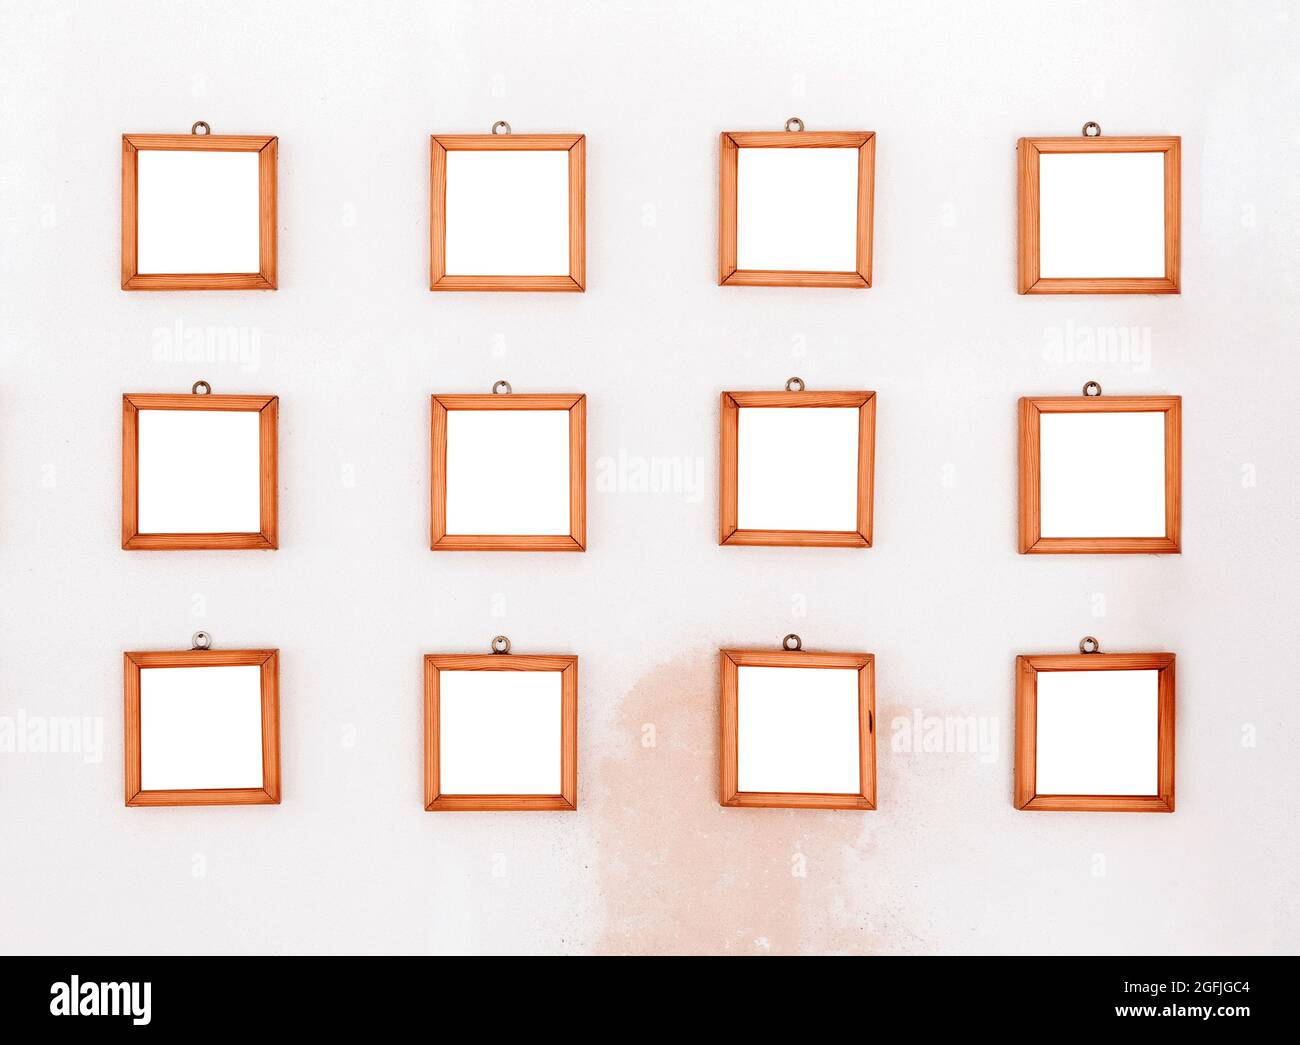 Dodici piccole cornici di legno quadrate semplici e vuote esposte su una parete bianca con macchia rossastra scolorita sotto in tre file pronte per uno spettacolo o una mostra Foto Stock